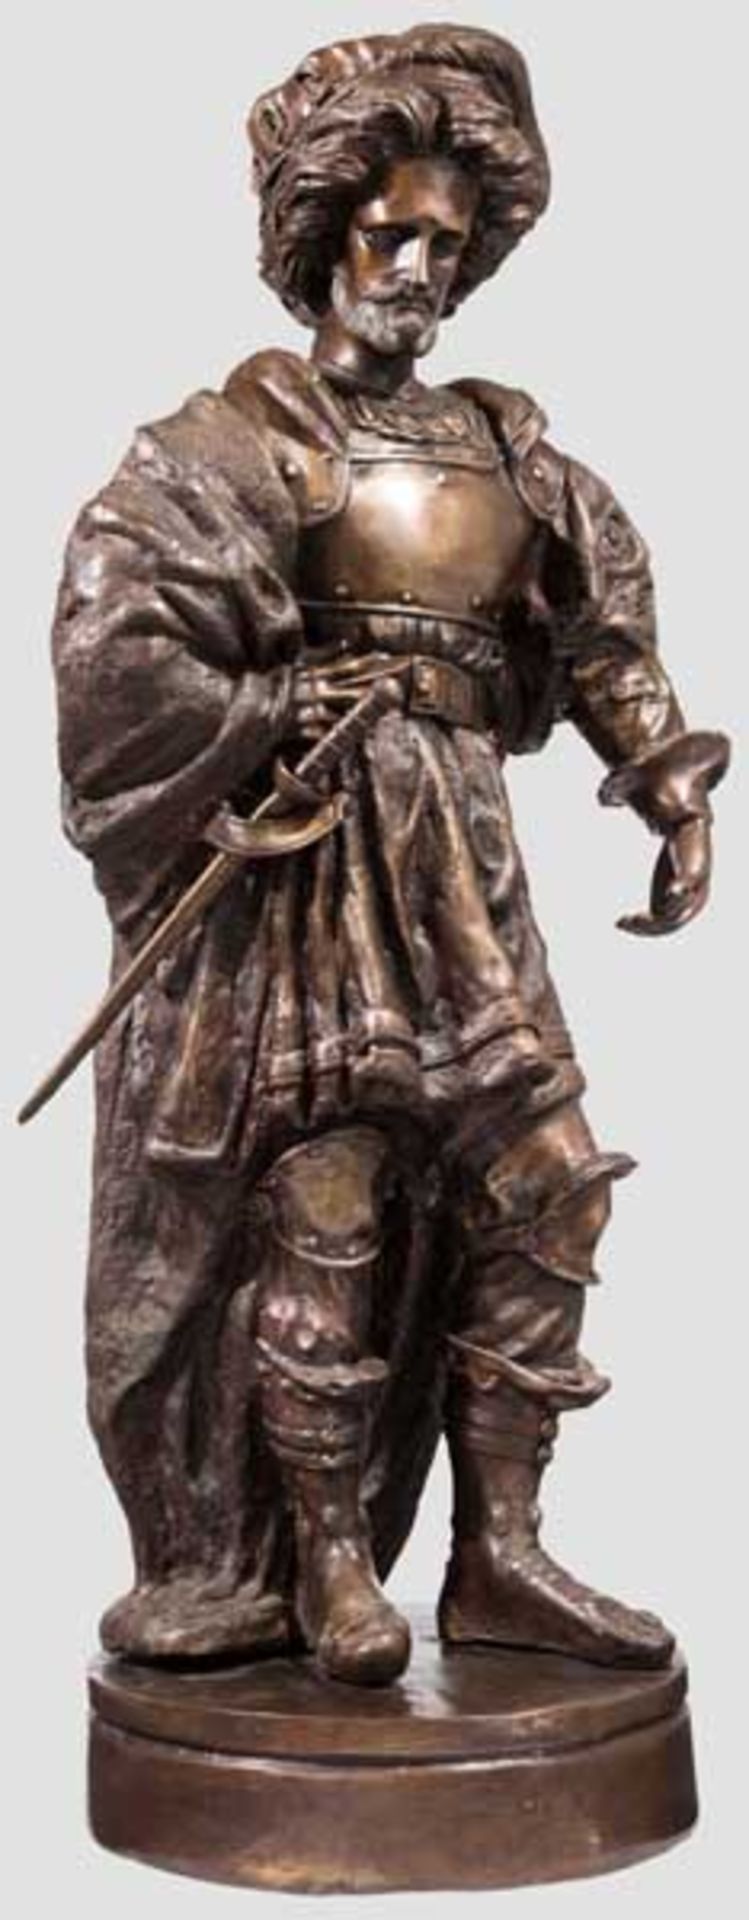 Bronzefigur eines Landsknechts, 20. Jhdt. Bronze mit braunschwarzer Patina. Plastisch modellierte